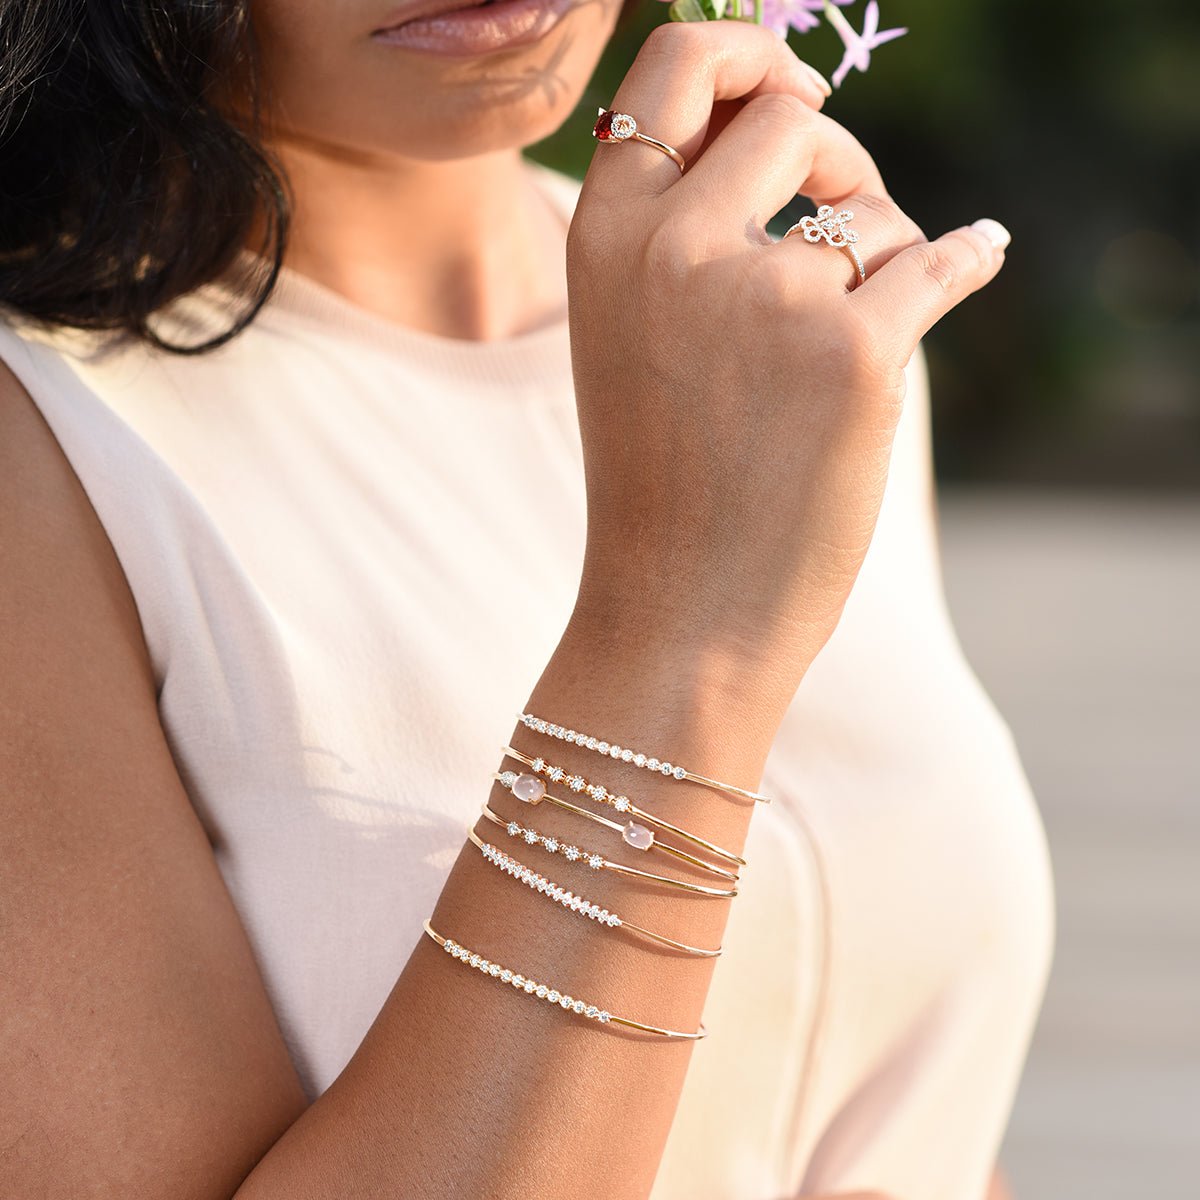 Rose Quartz Cuff Bangle with Diamonds Bracelets Estella Collection #product_description# 14k Diamond Gemstone #tag4# #tag5# #tag6# #tag7# #tag8# #tag9# #tag10#